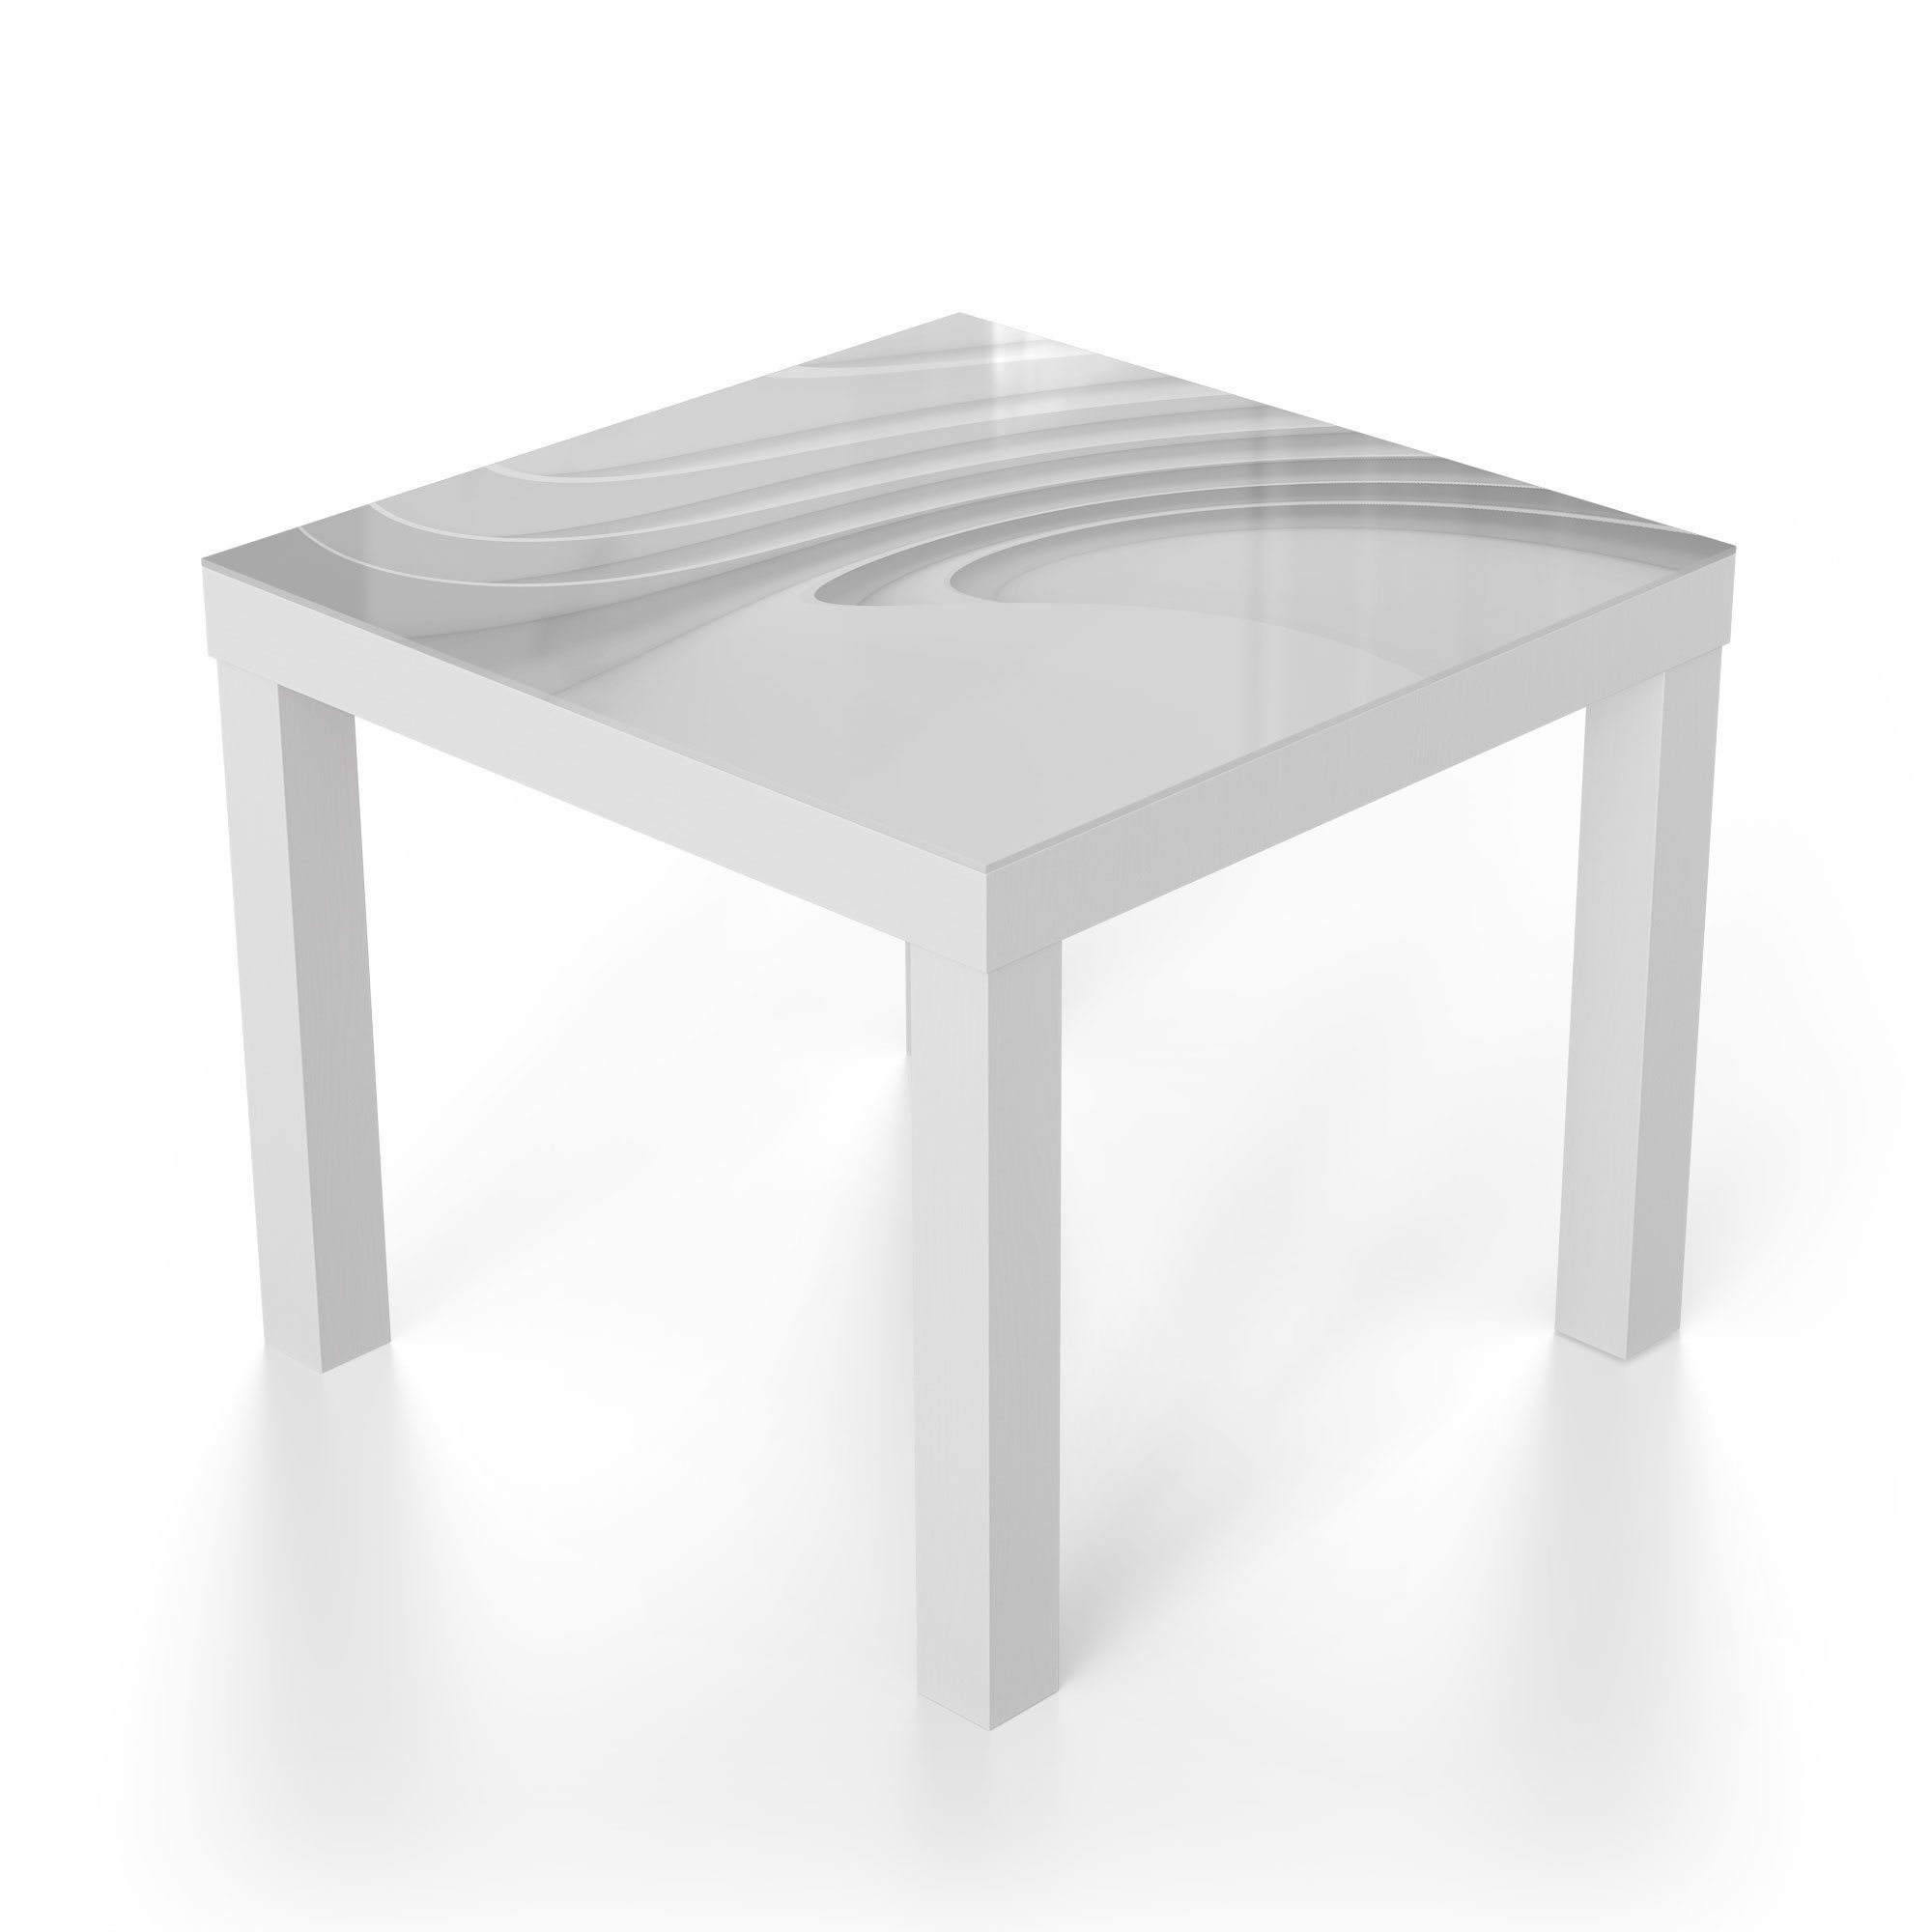 DEQORI Couchtisch Glastisch Glas modern Lamellenlinien', Weiß Beistelltisch 'Fließende